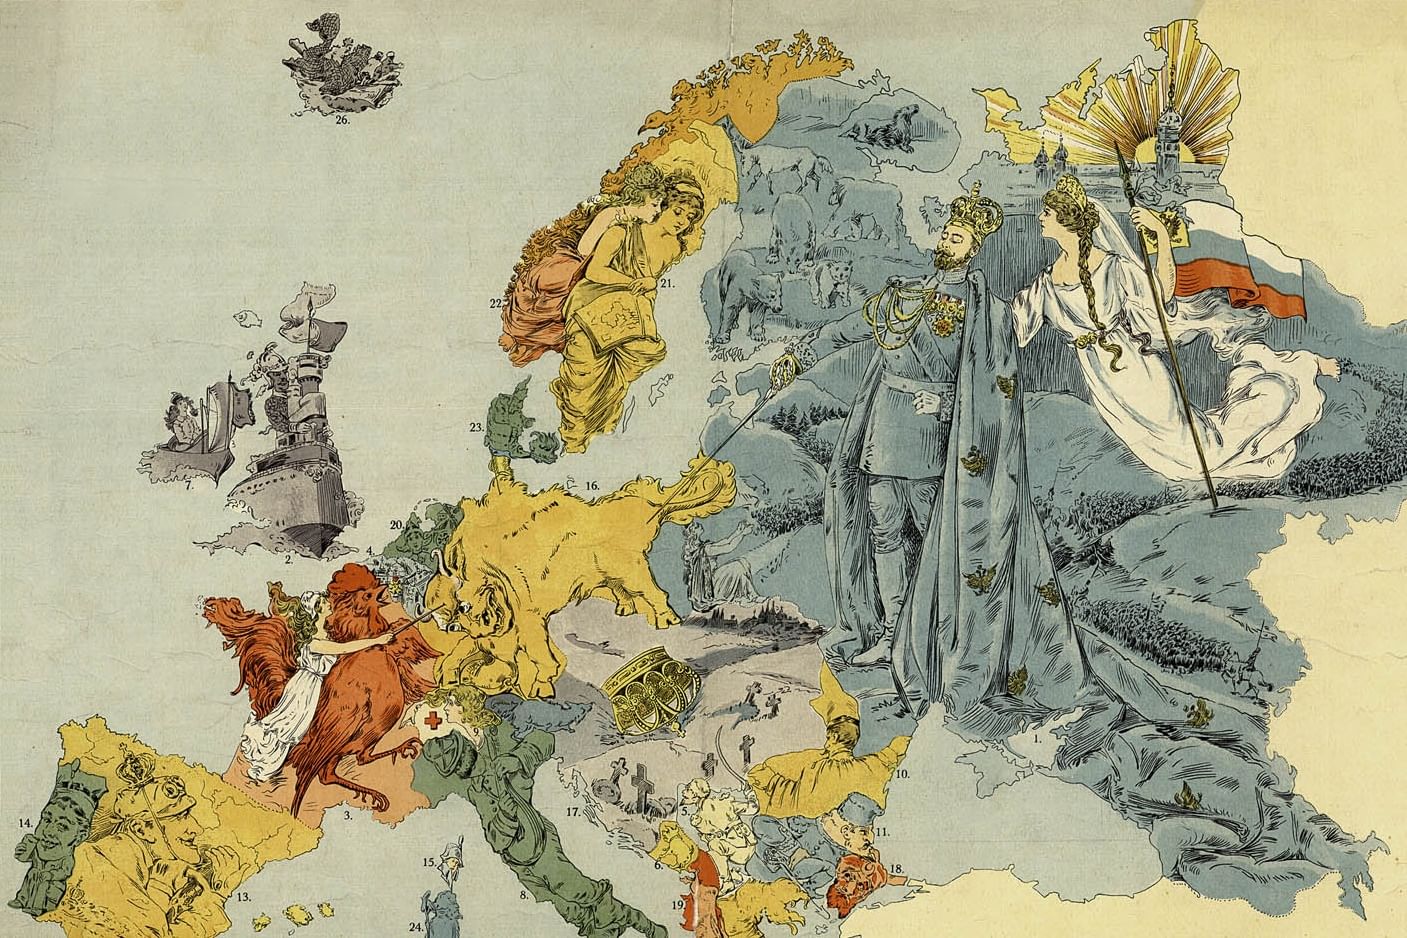 Европа иллюстрация